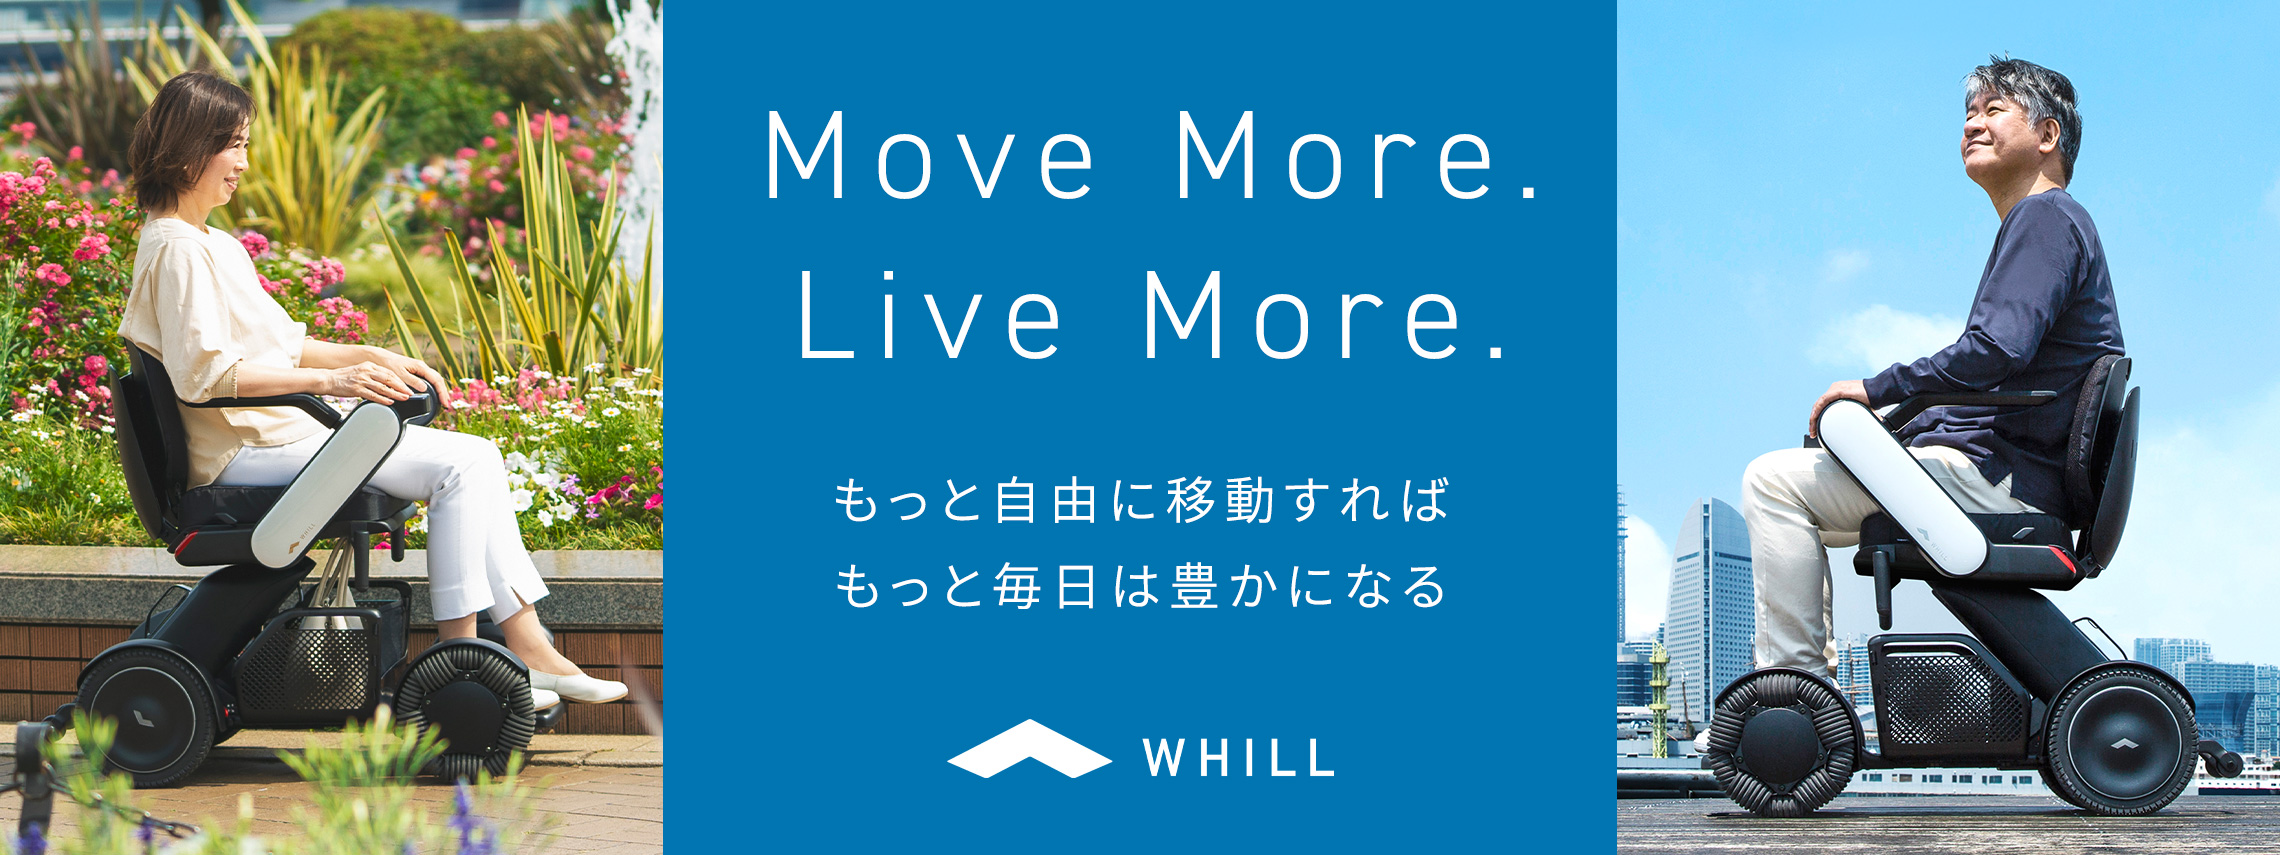 Move More. Live More. - もっと自由に移動すれば、もっと毎日は豊かになる